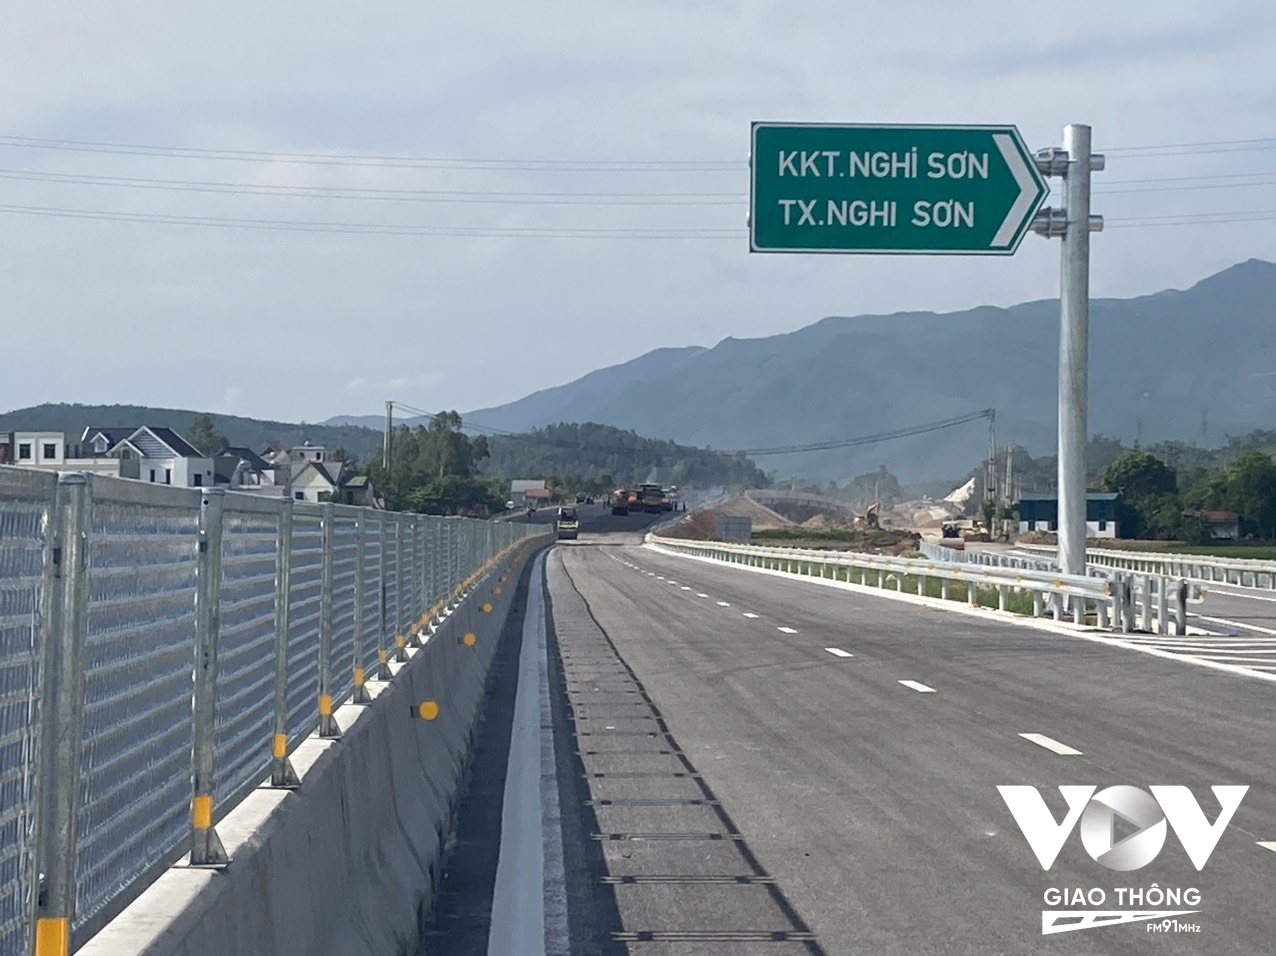 Cao tốc Bắc - Nam đoạn từ Thanh Hóa tới Nghệ An sẽ được đưa vào khai thác đúng dịp Quốc khánh